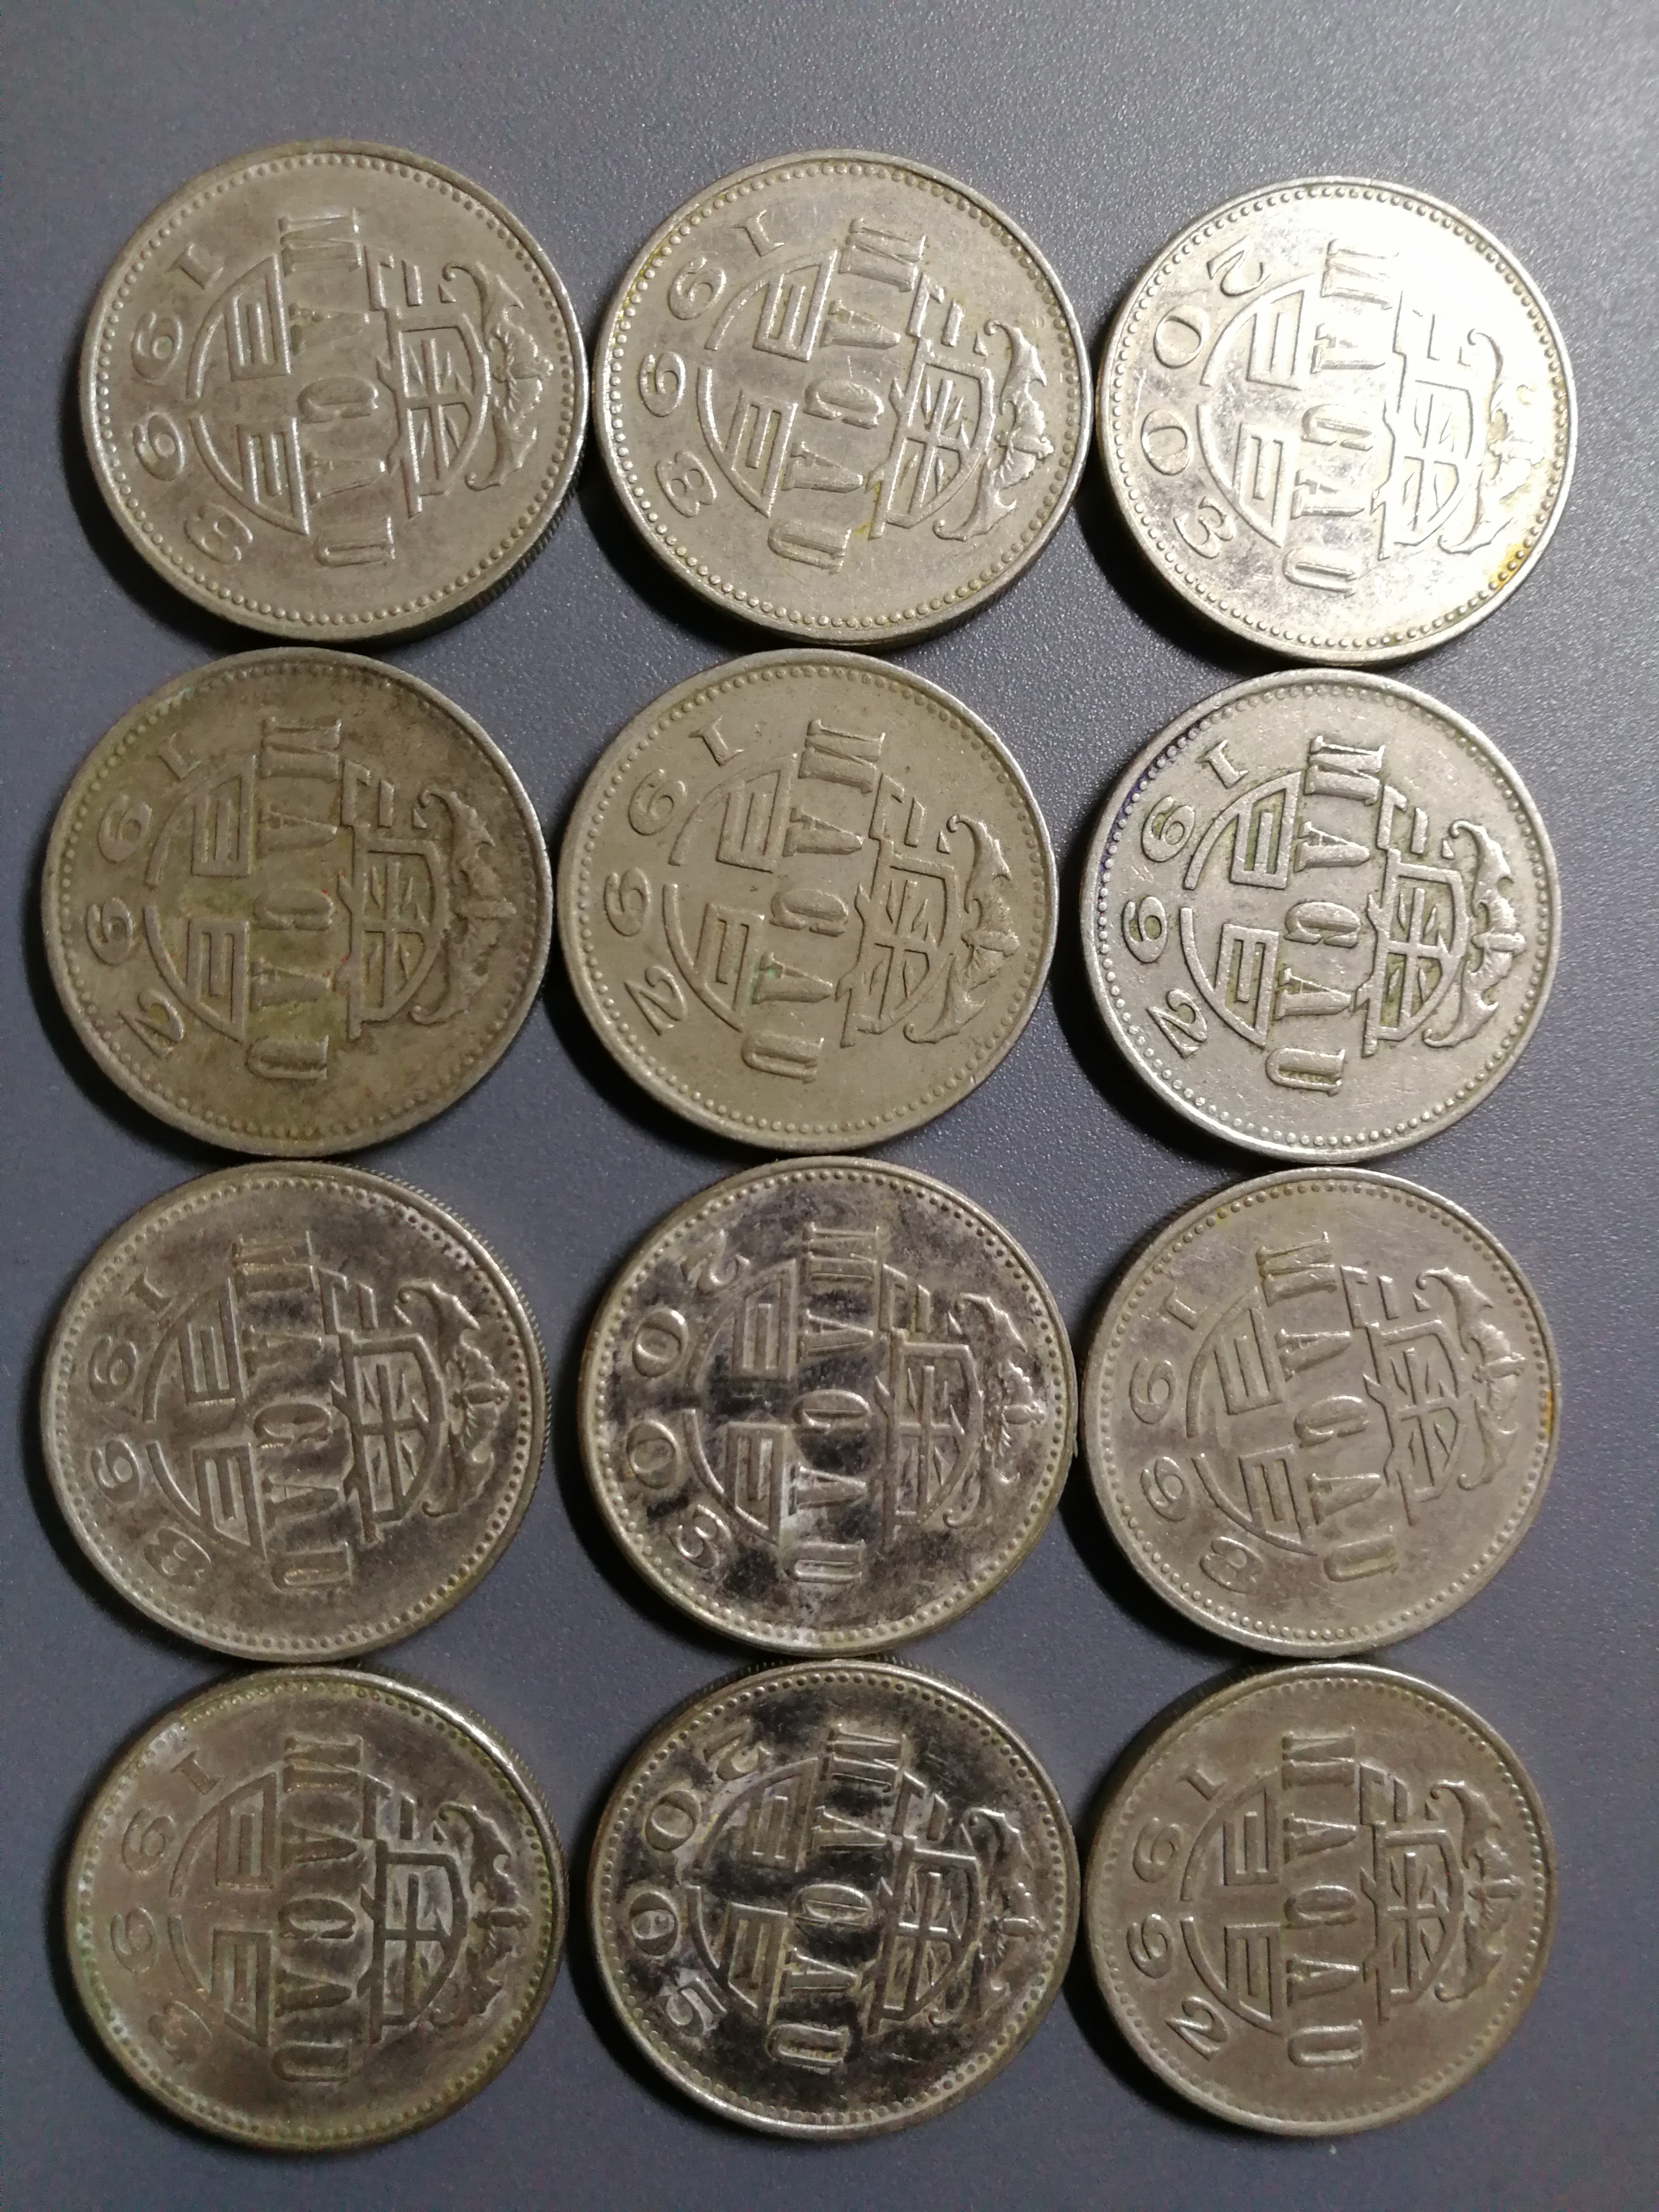 澳门币一元硬币图片图片